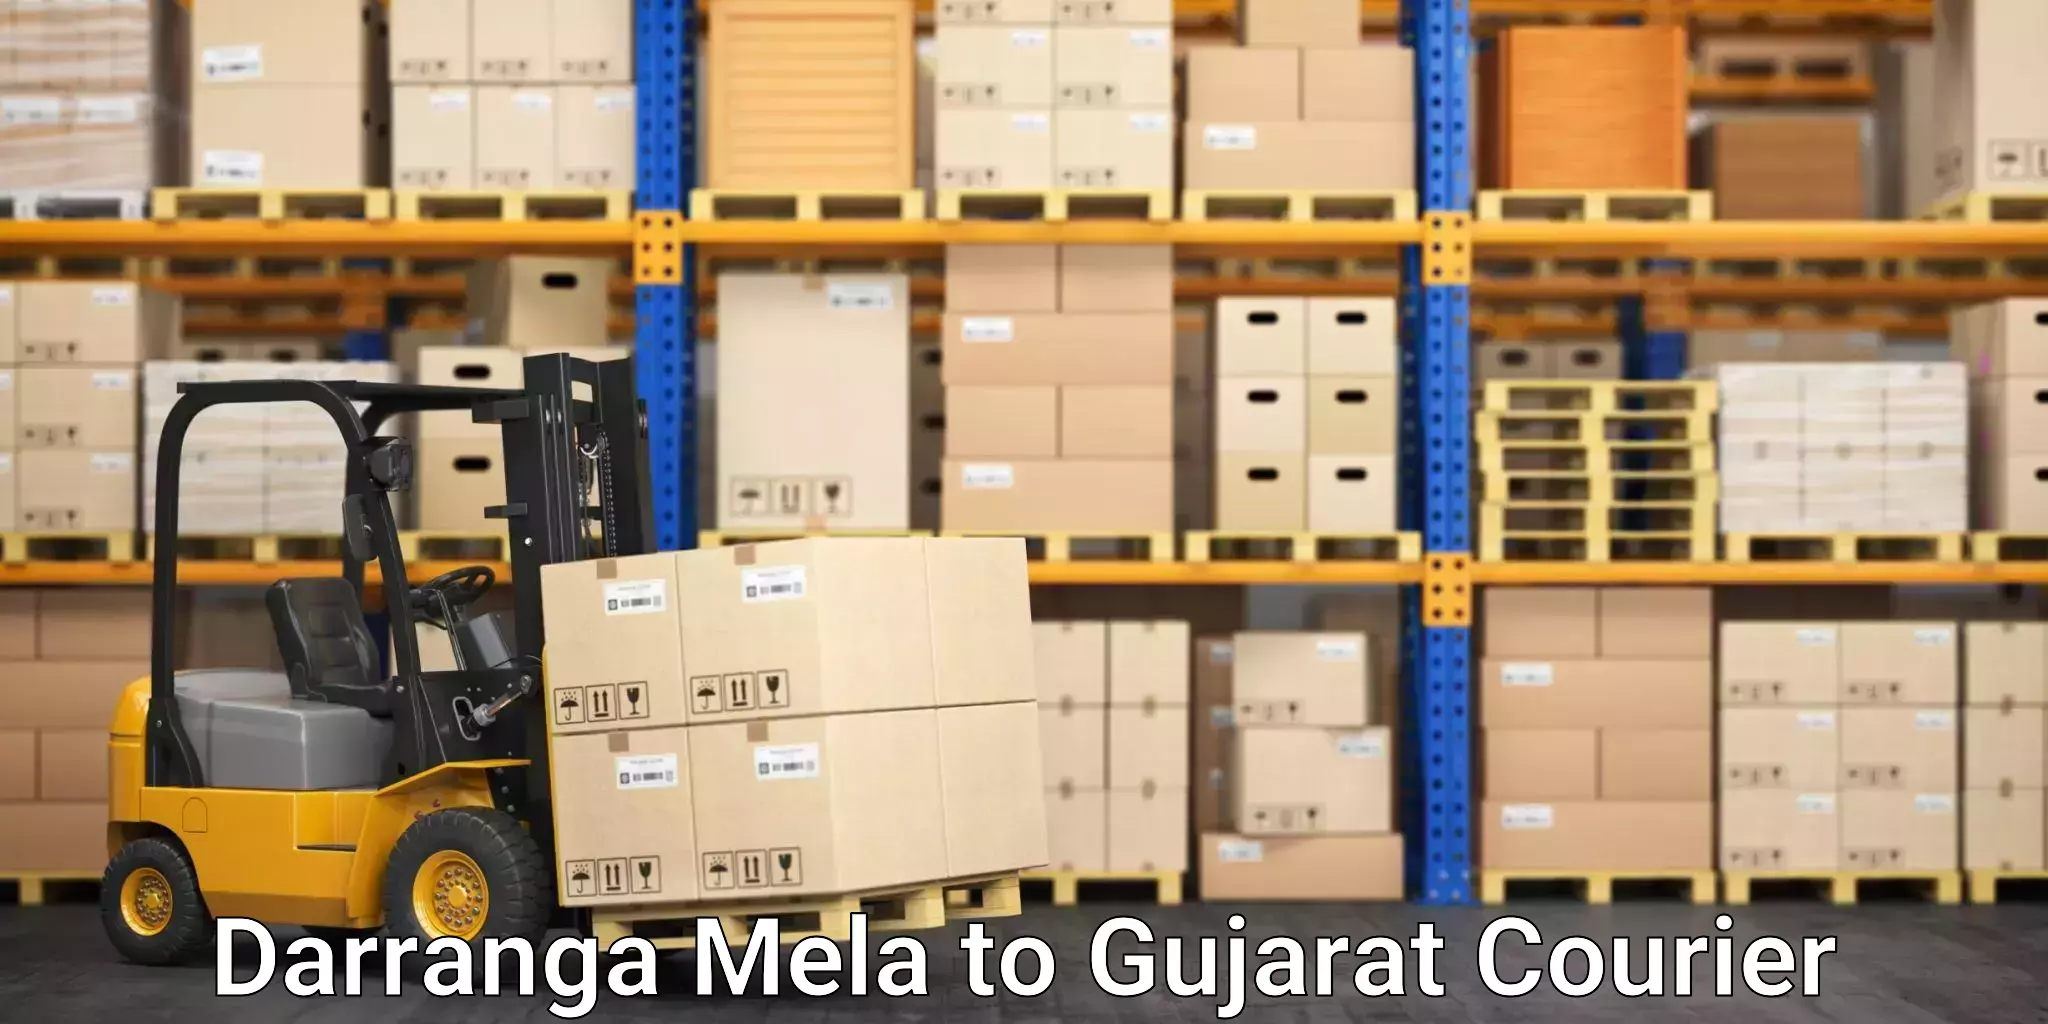 Comprehensive logistics solutions in Darranga Mela to Gujarat